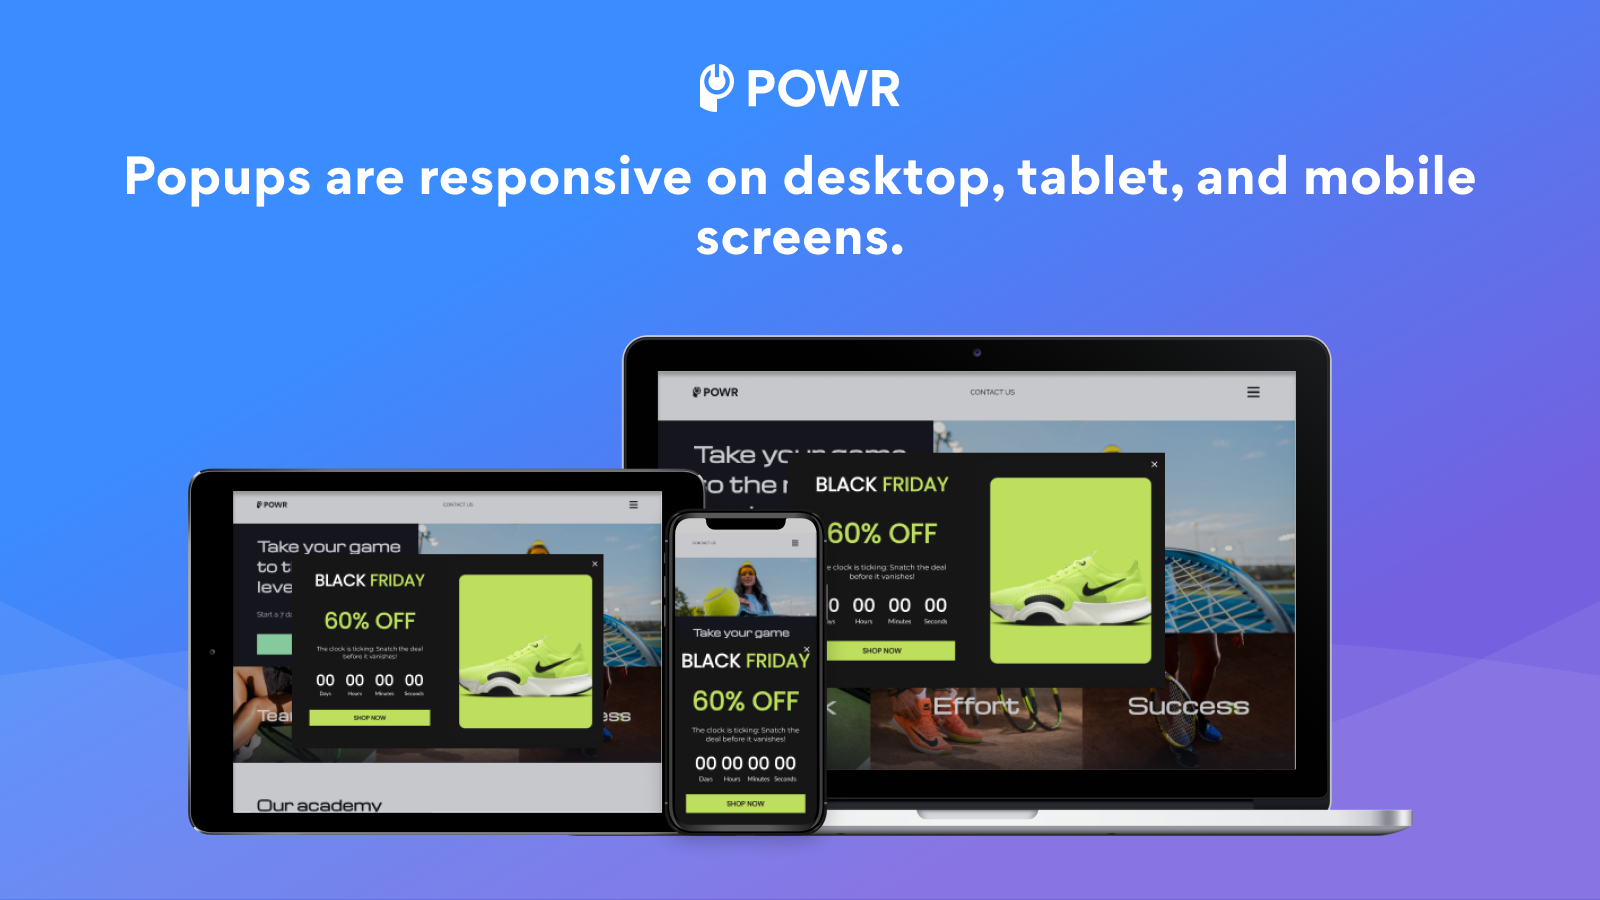 Los popups son responsivos en pantallas de escritorio, tabletas y móviles.